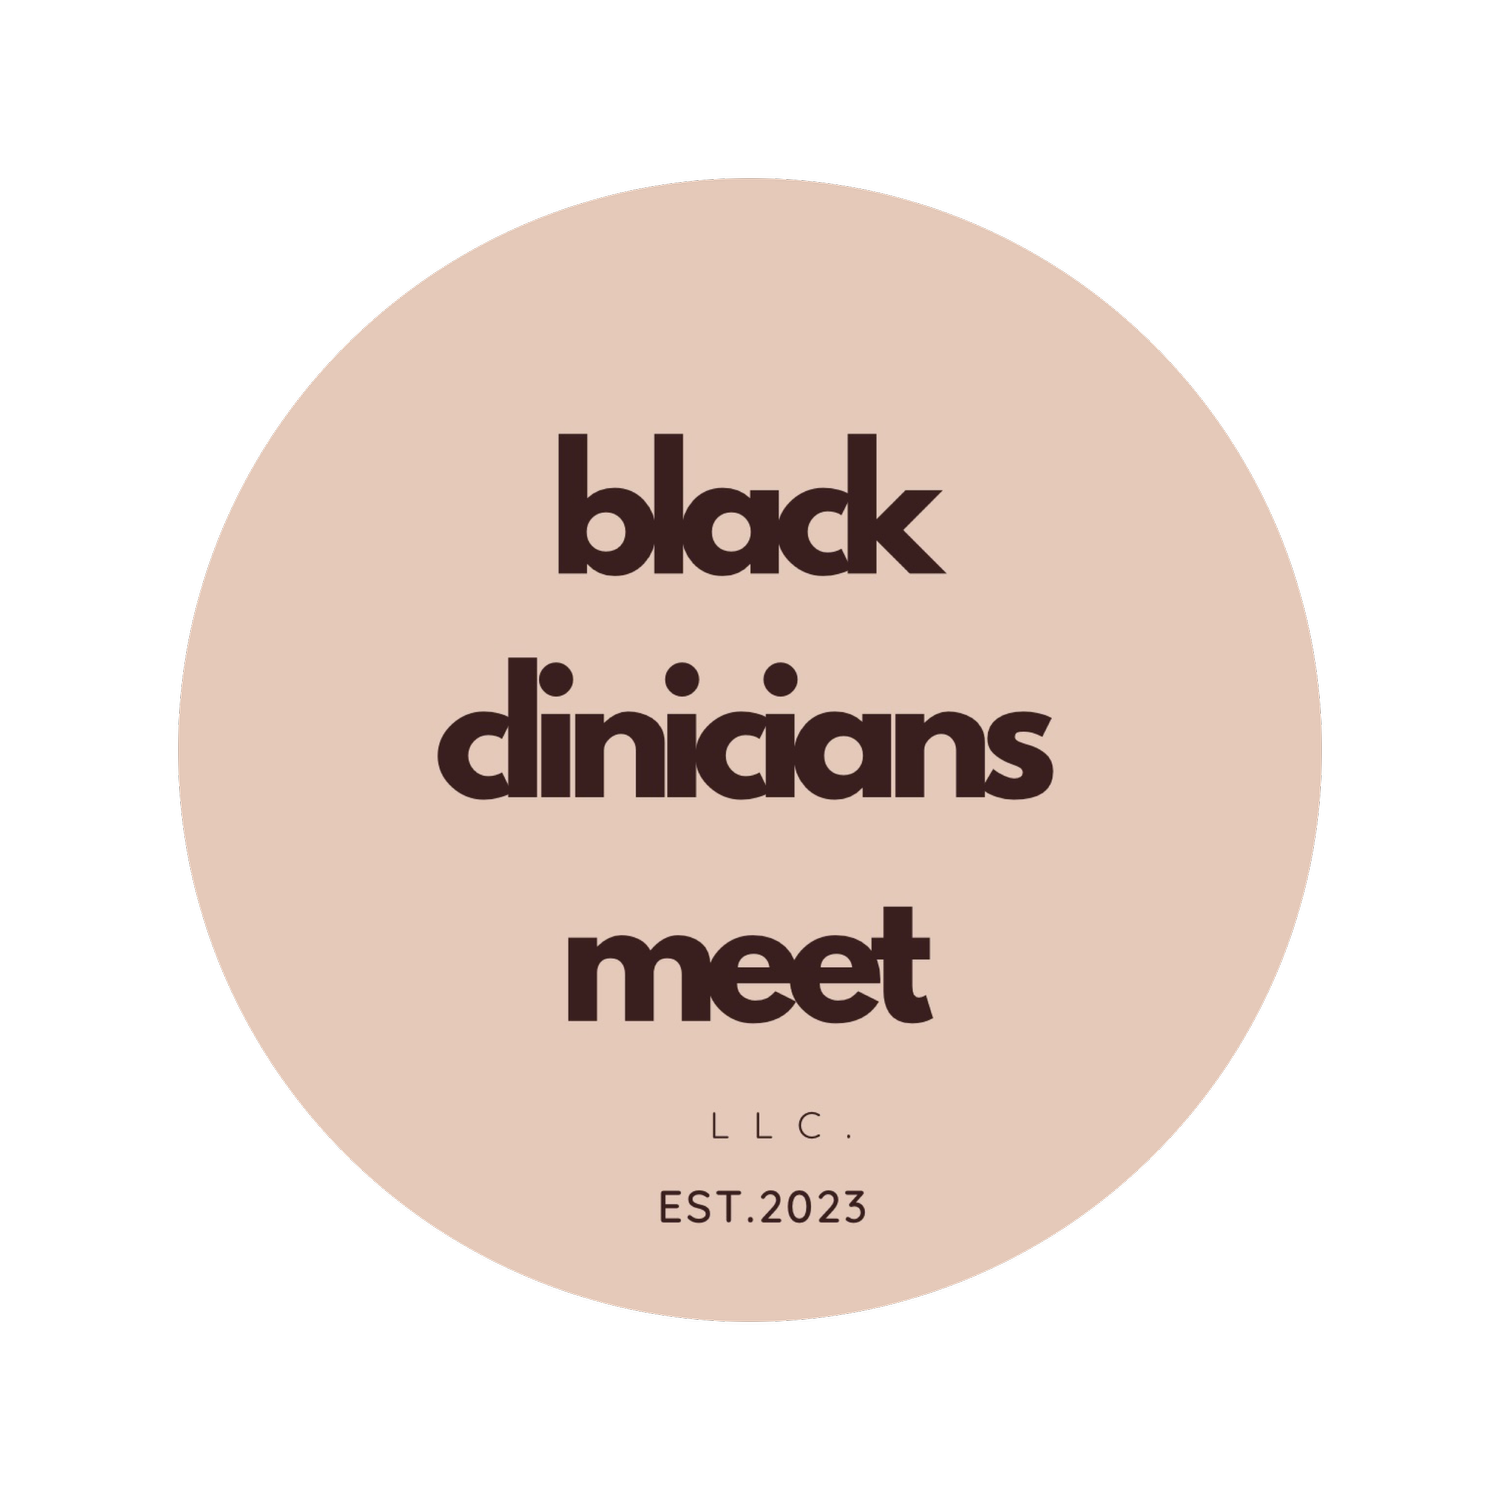 Black Clinicians Meet